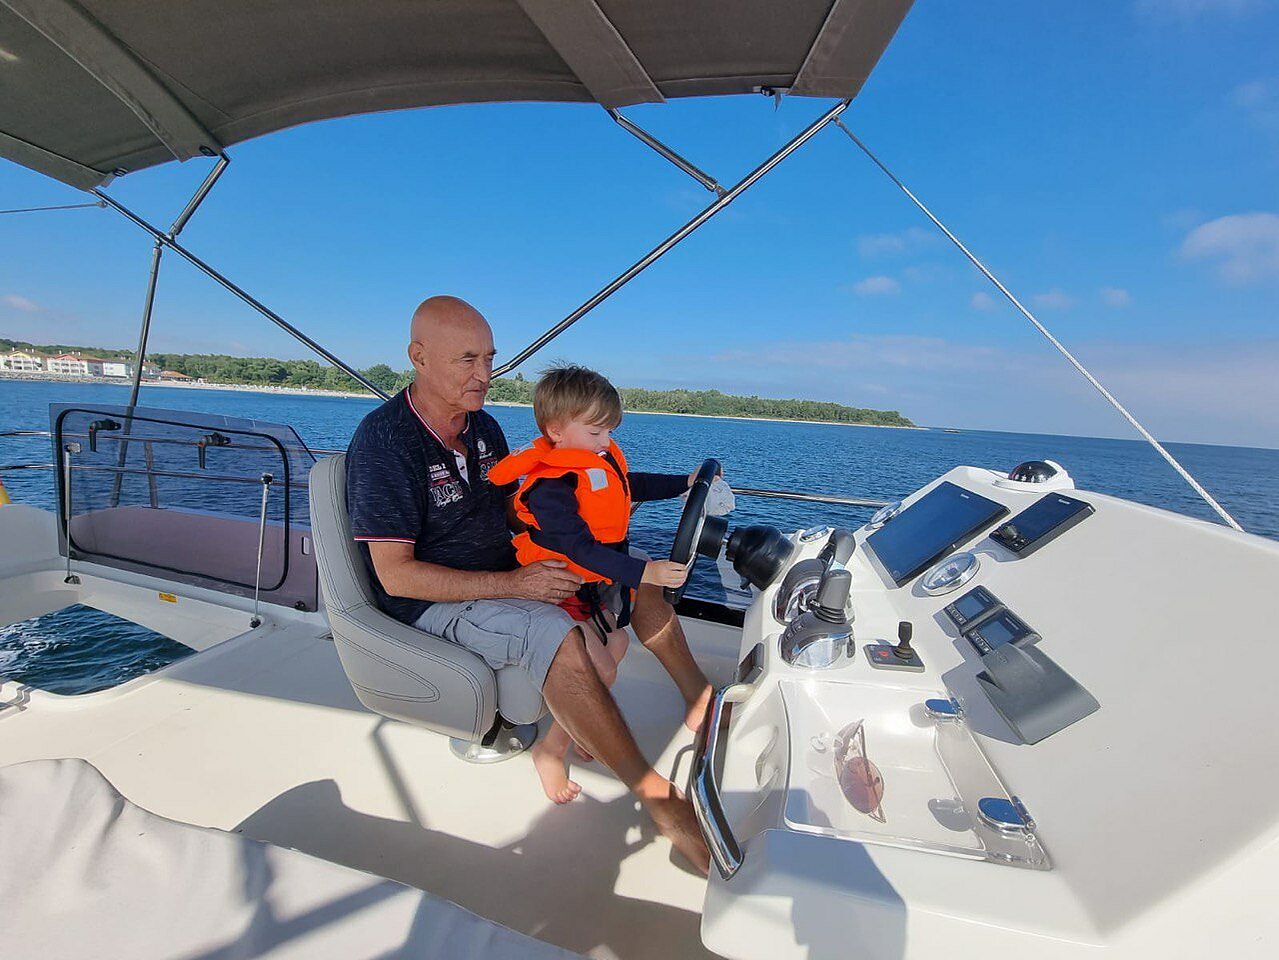 Der Verstorbene mit einem seiner Enkel am Ruder seines Motorbootes auf dem Wasser, bei blauem Himmel, im Hintergrund ist noch das Festland zu sehen.